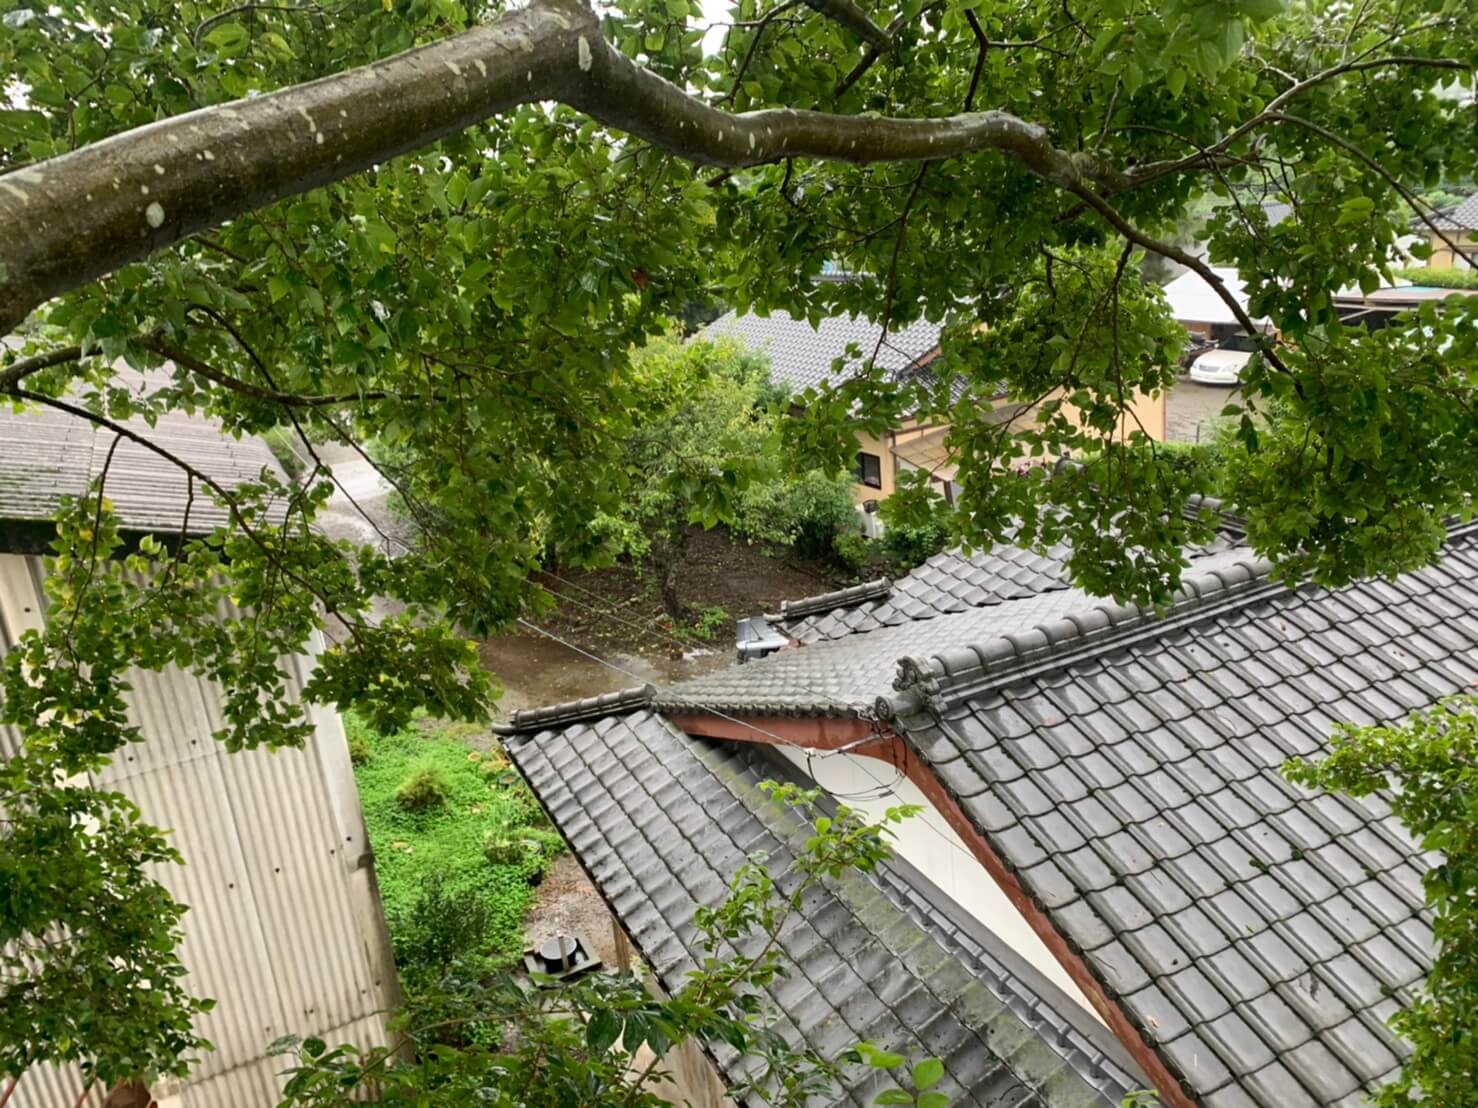 枝の真下には瓦やトタン屋根があるため、作業は慎重かつスピーディーに